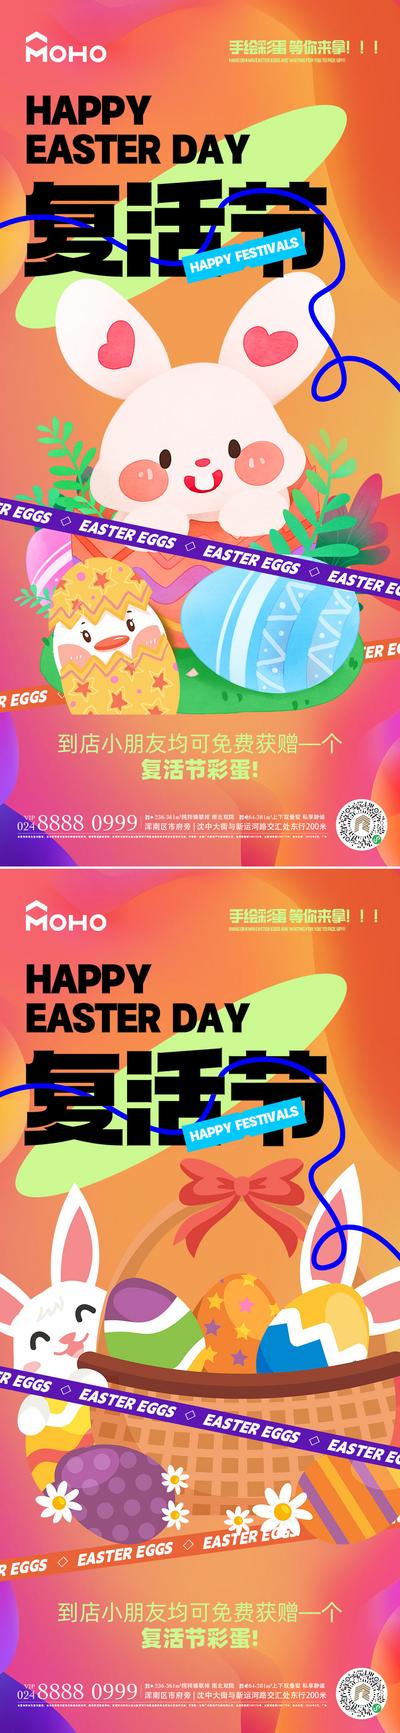 南门网 海报 节日 促销 复活节 彩蛋 复活 兔子 礼物 帽子 庆祝 喜庆 游玩 娱乐